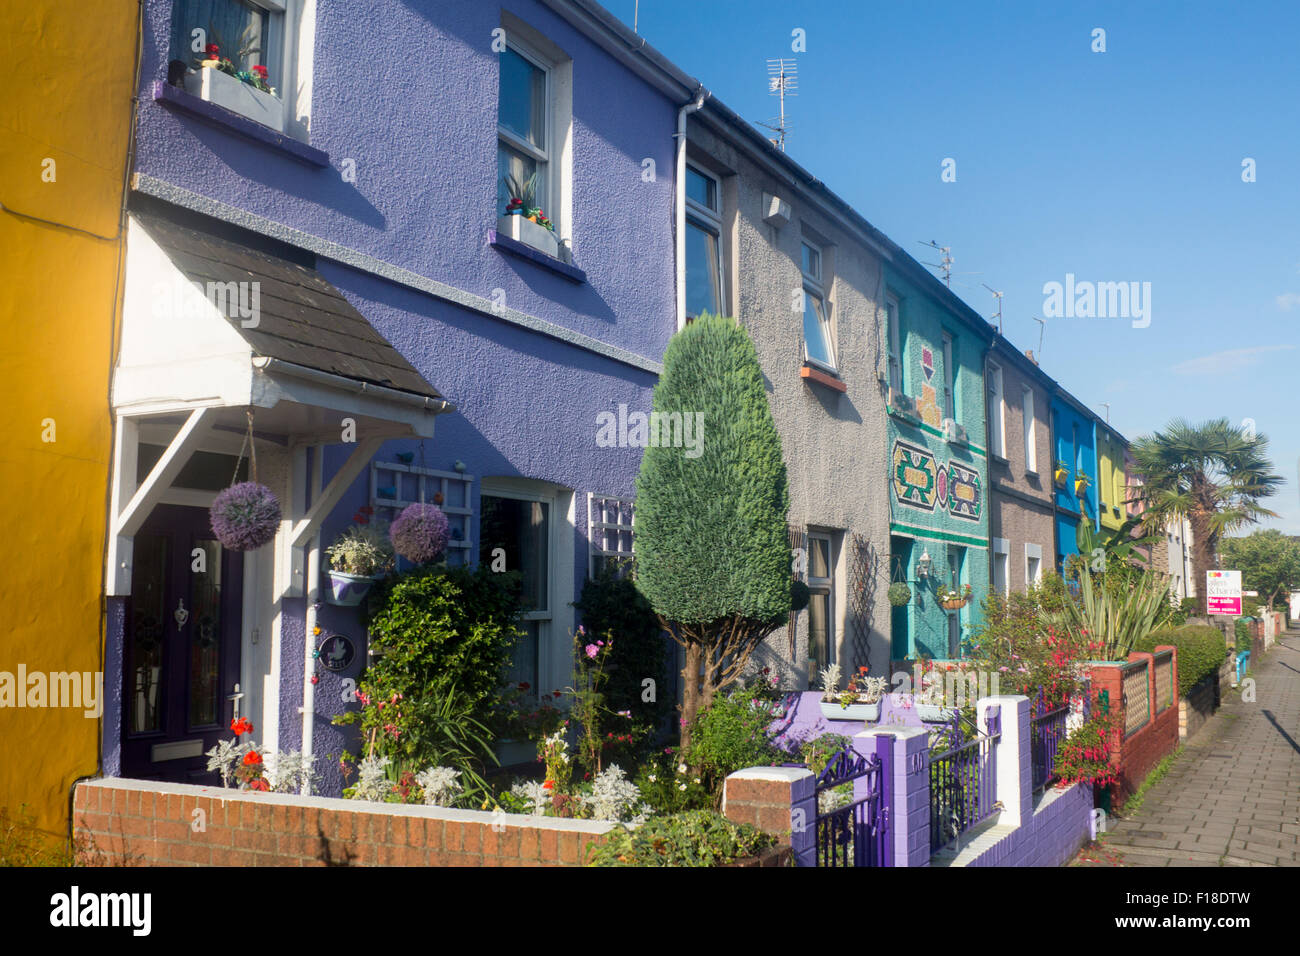 Peint en couleur Terrasse Terrasse maisons cottages Roath Cardiff Wales UK Banque D'Images